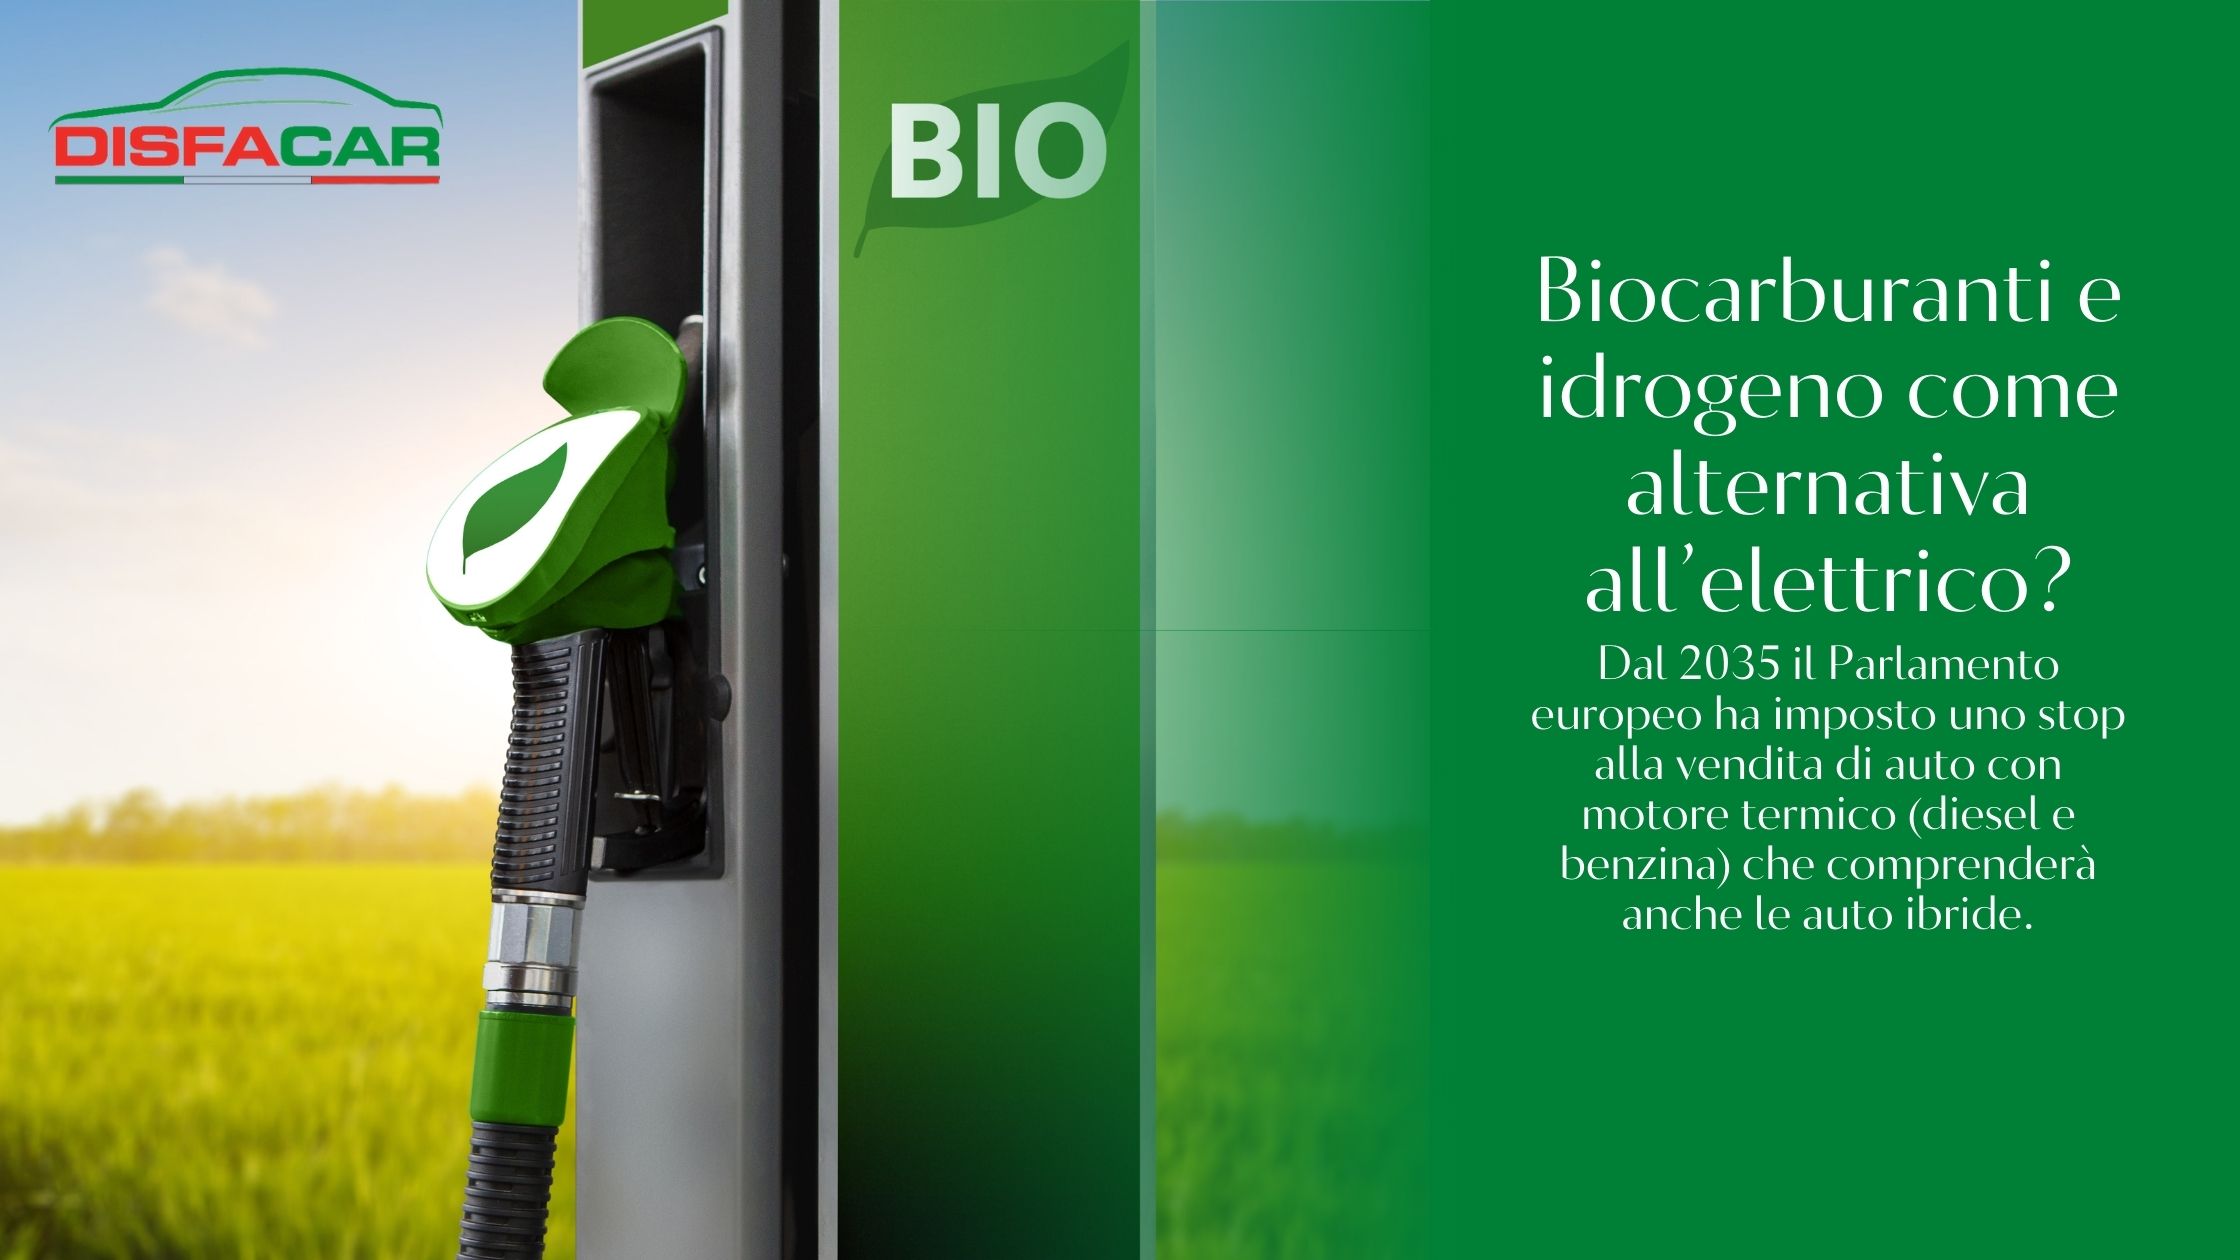 biocarburanti e idrogeno alternativa all'elettrico